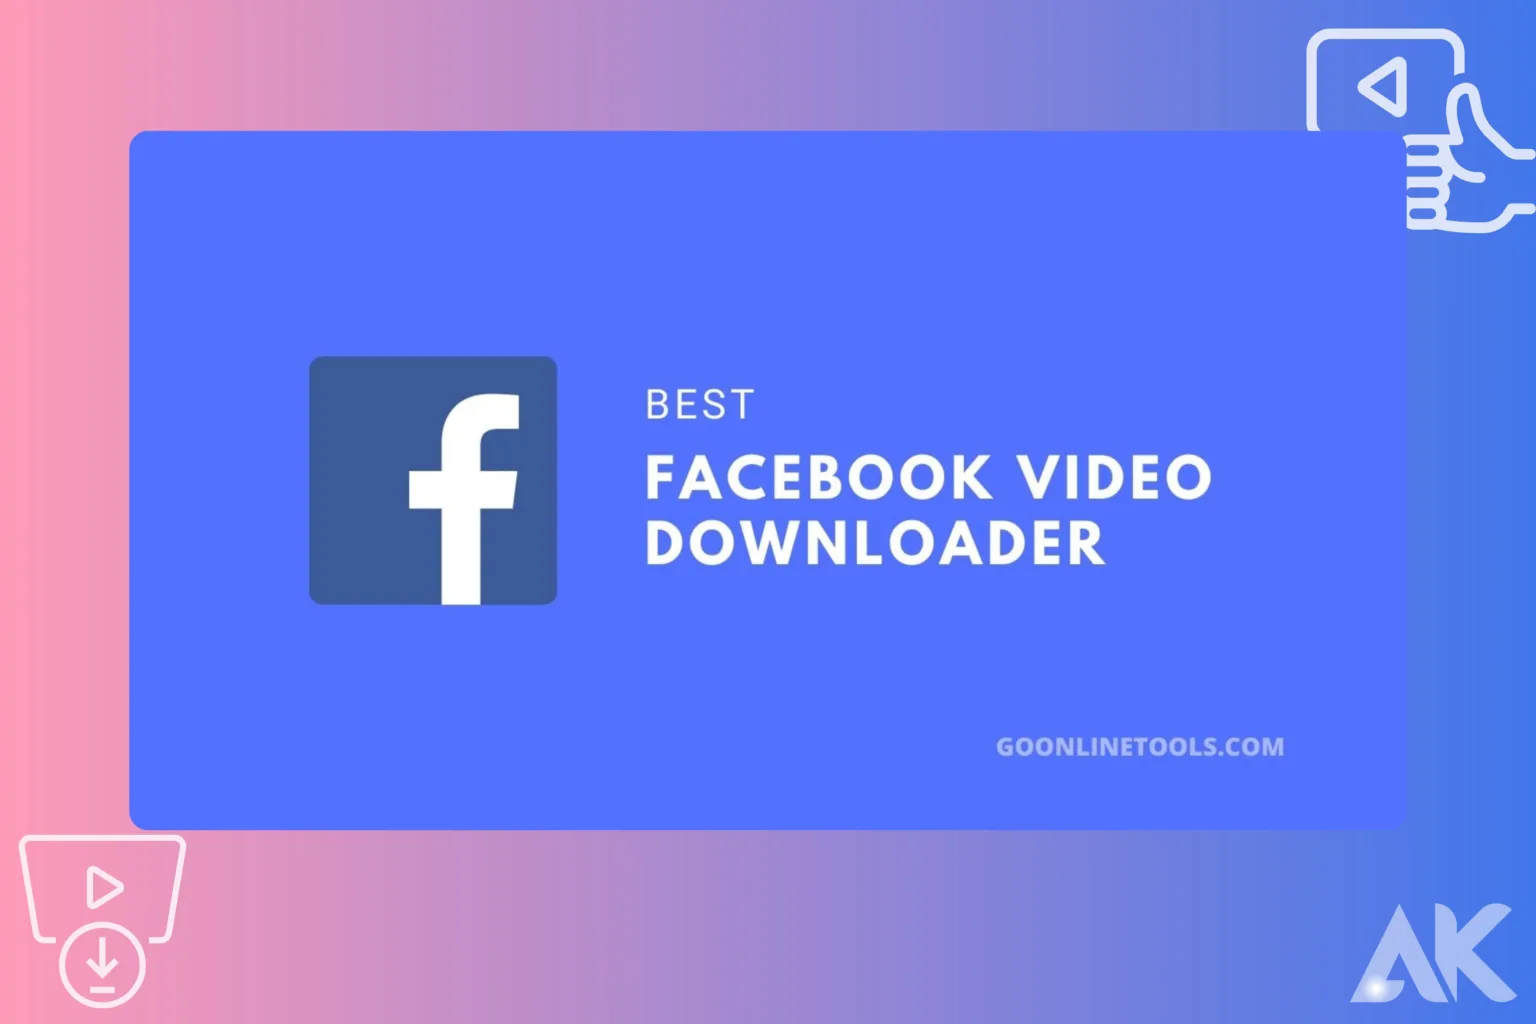 Facebook video downloader